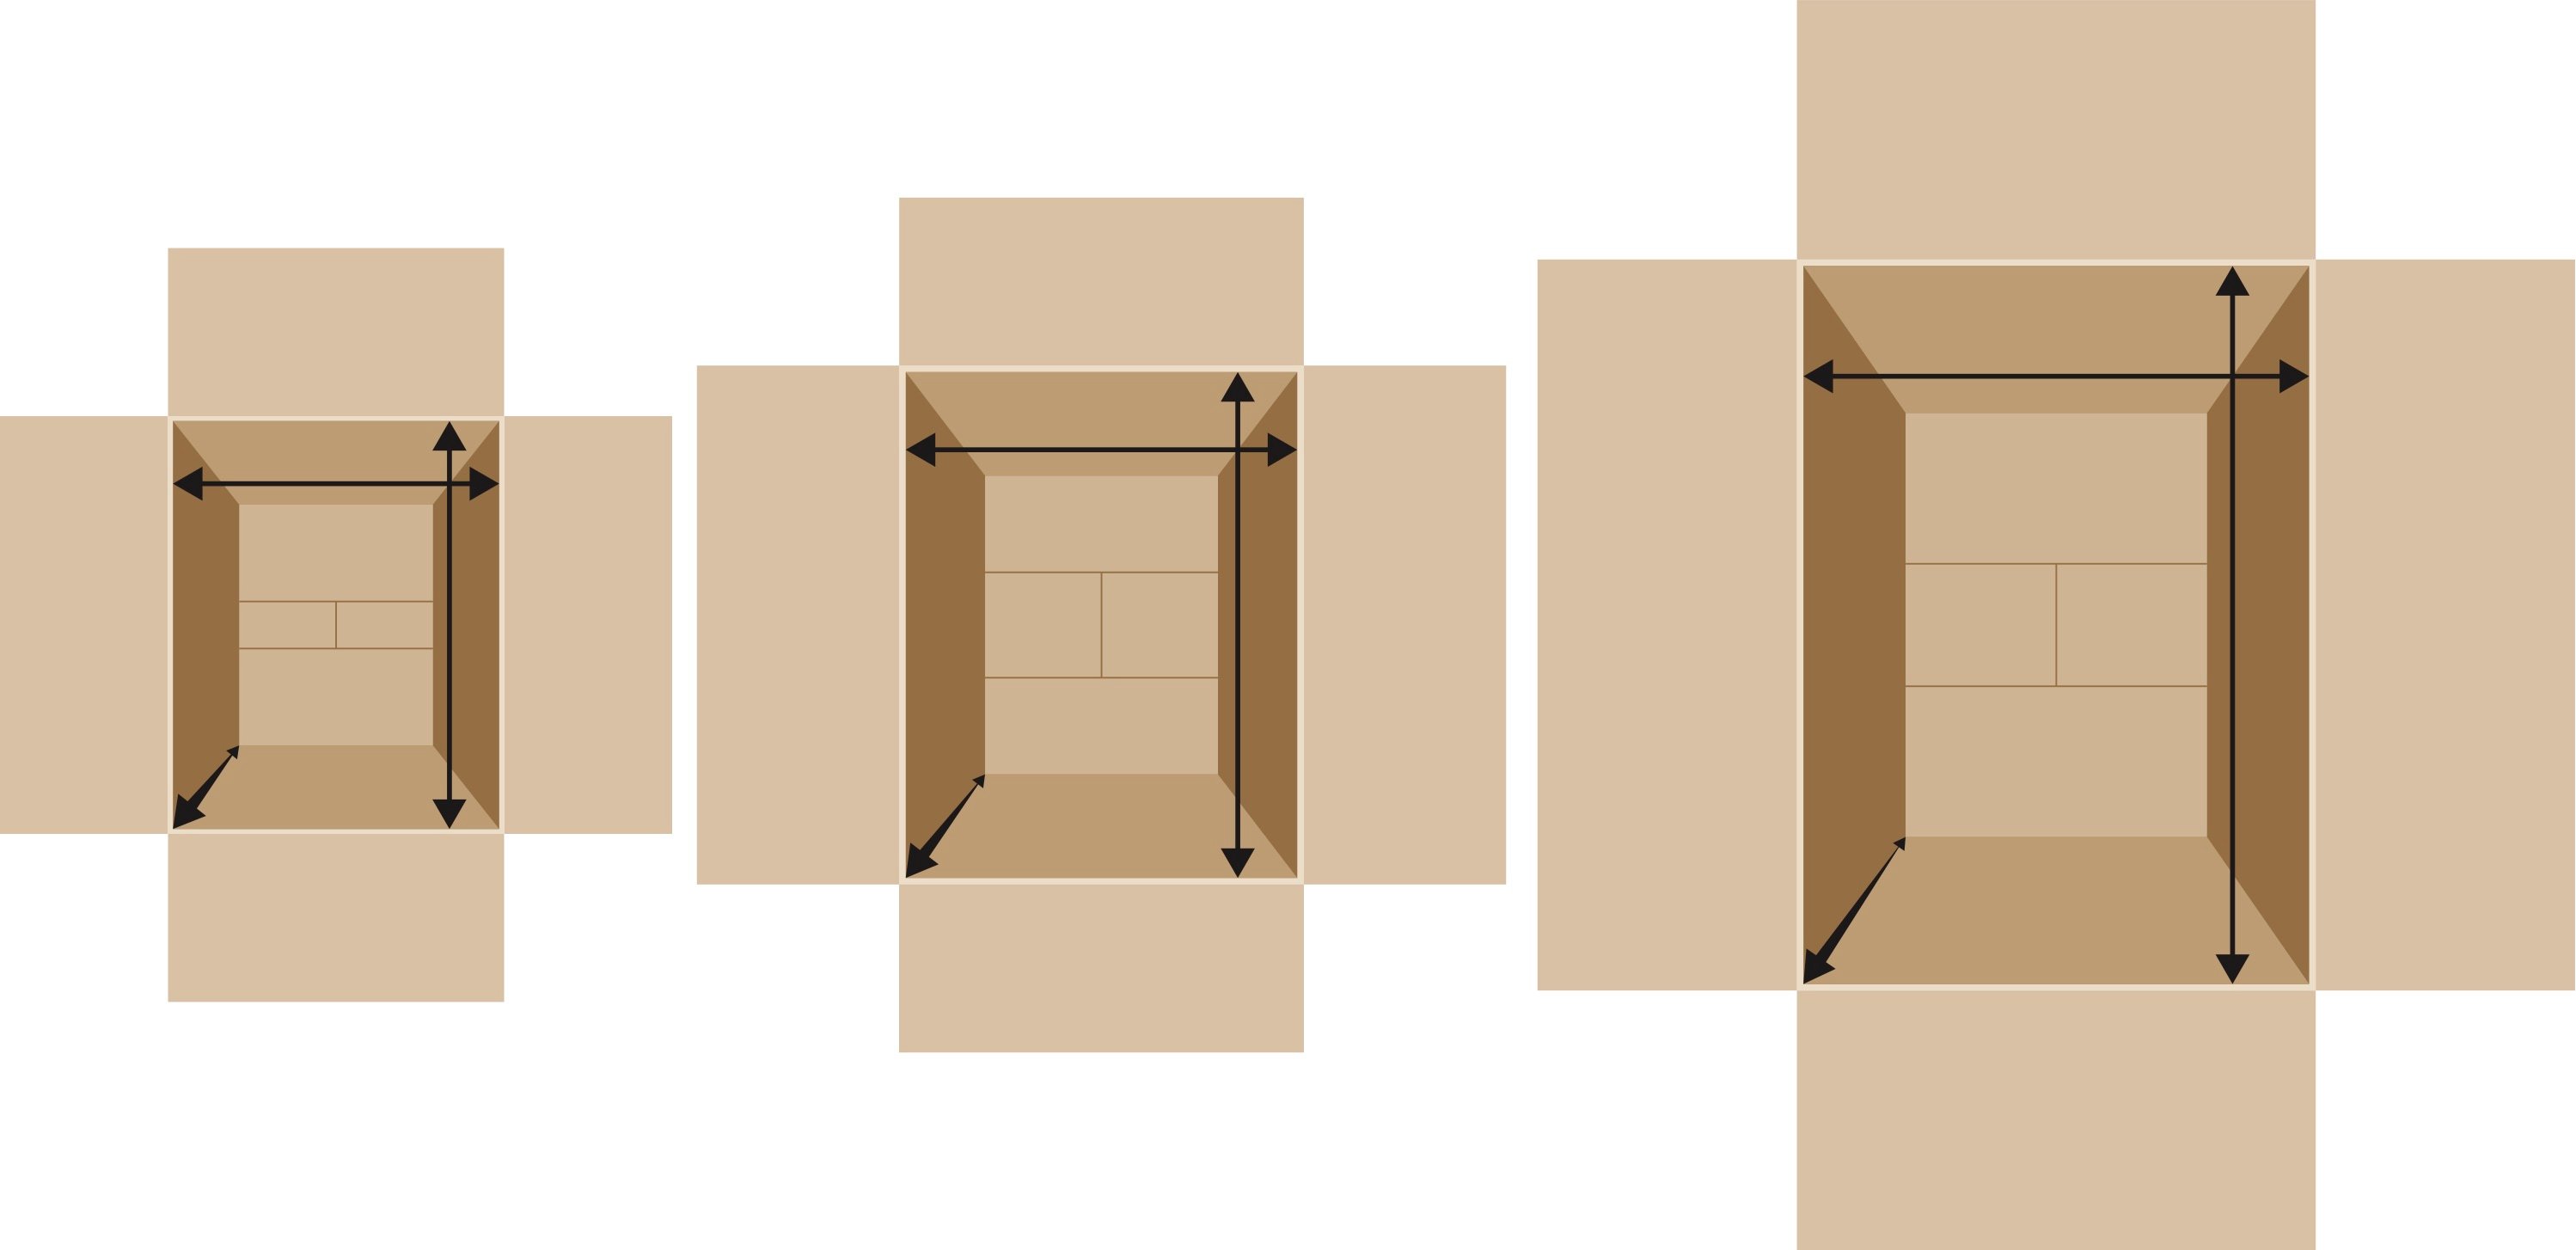 Interior Dimensions of Box